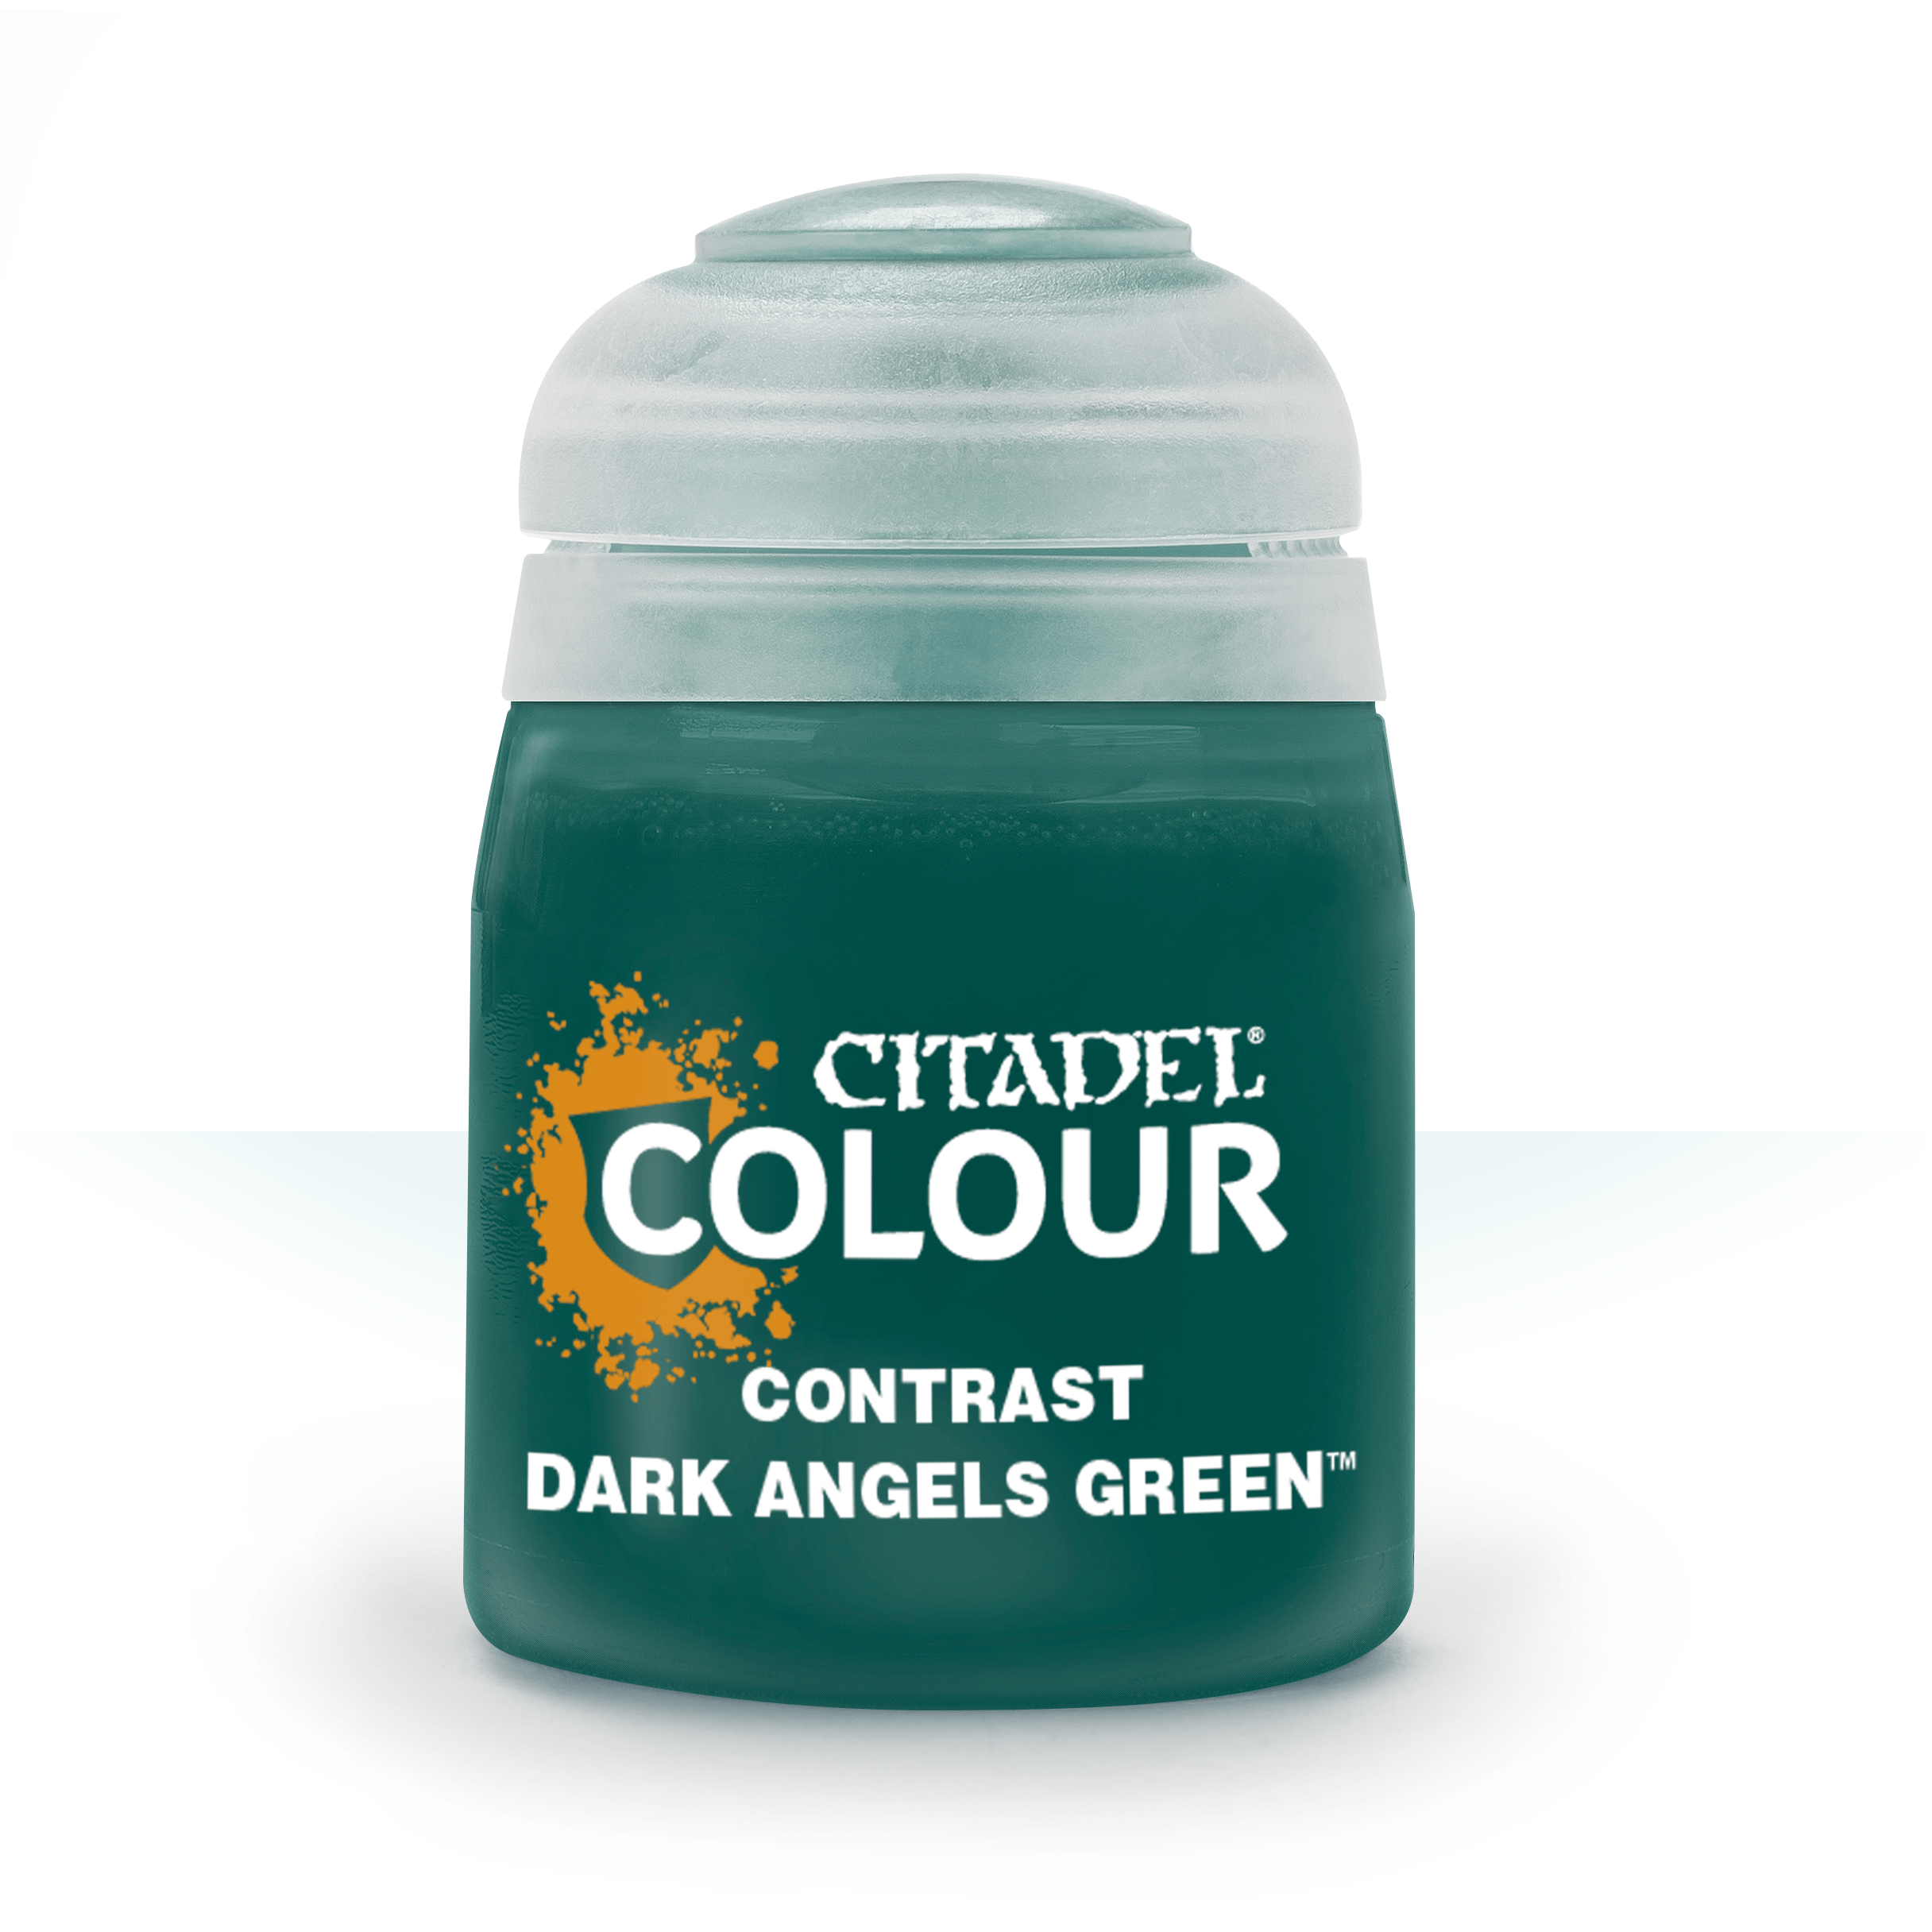 Citadel: Dark Angels Green